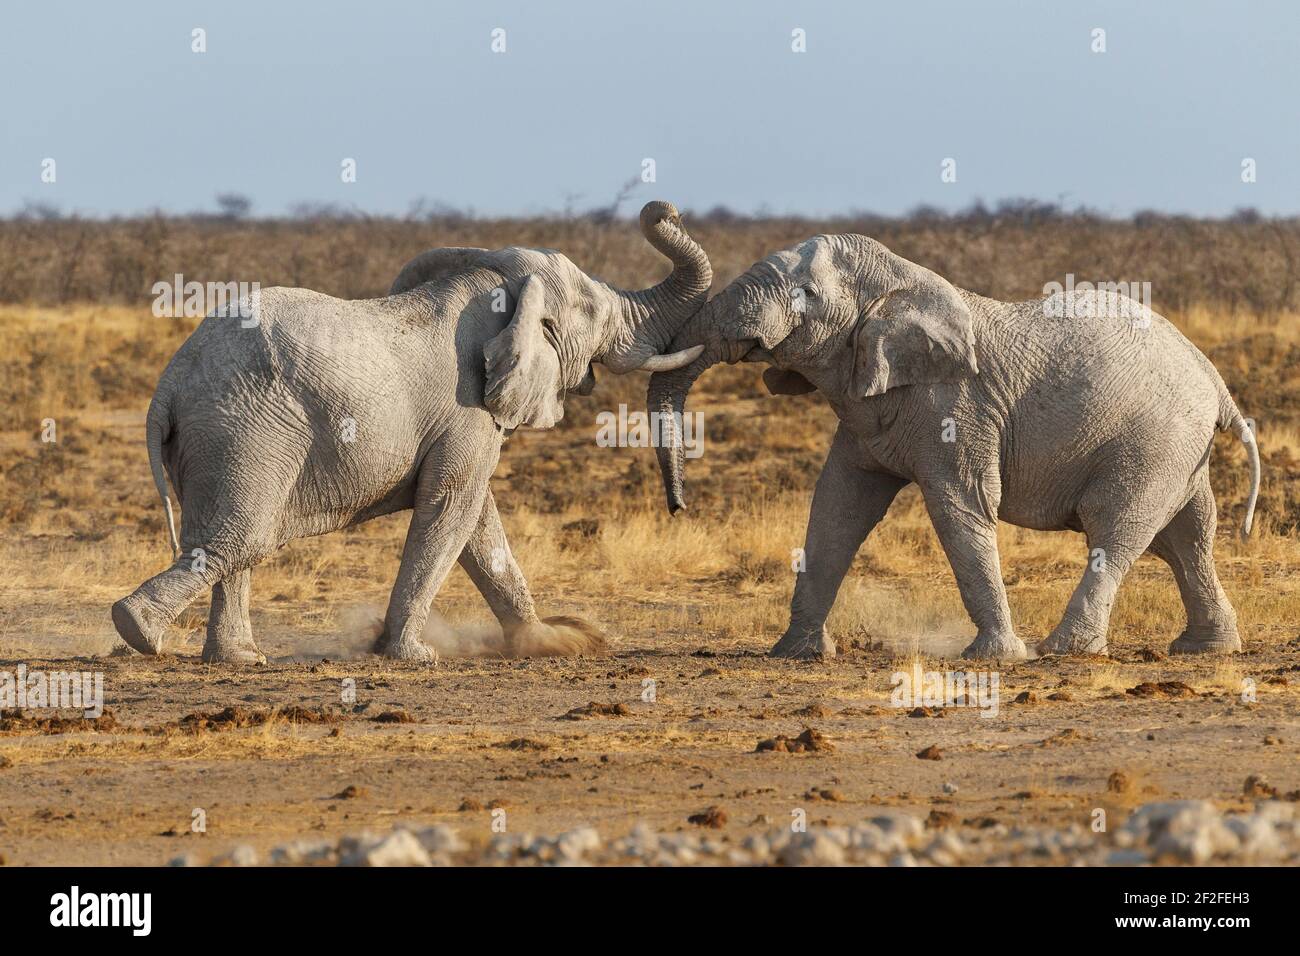 Lotta degli elefanti (Loxodonta africana), 2 tori che combattono con le zanne e i tronchi. Presenza di polvere nell'aria. Parco Nazionale di Etosha, Namibia, Africa Foto Stock